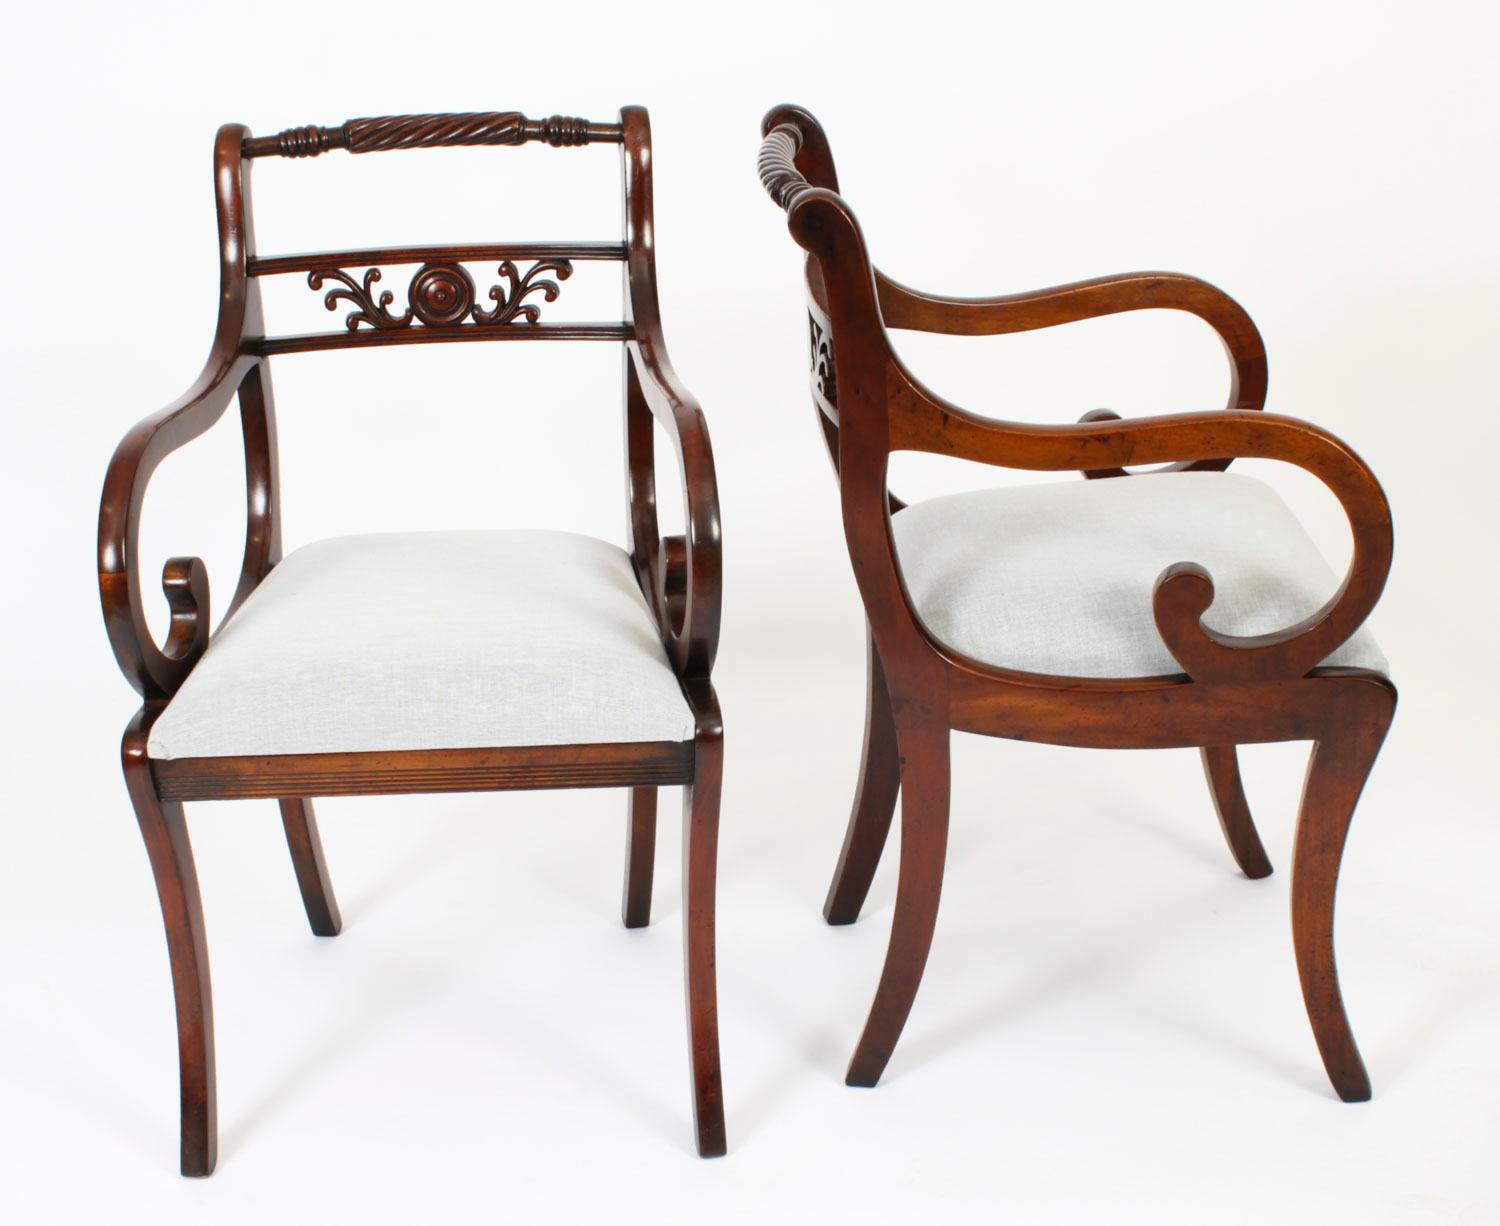 Une paire de fauteuils Regency Revival Vintage absolument fantastique datant de la seconde moitié du siècle dernier.  20ème siècle.

Ces chaises ont été fabriquées de main de maître dans un magnifique acajou massif flammé. La finition et l'attention